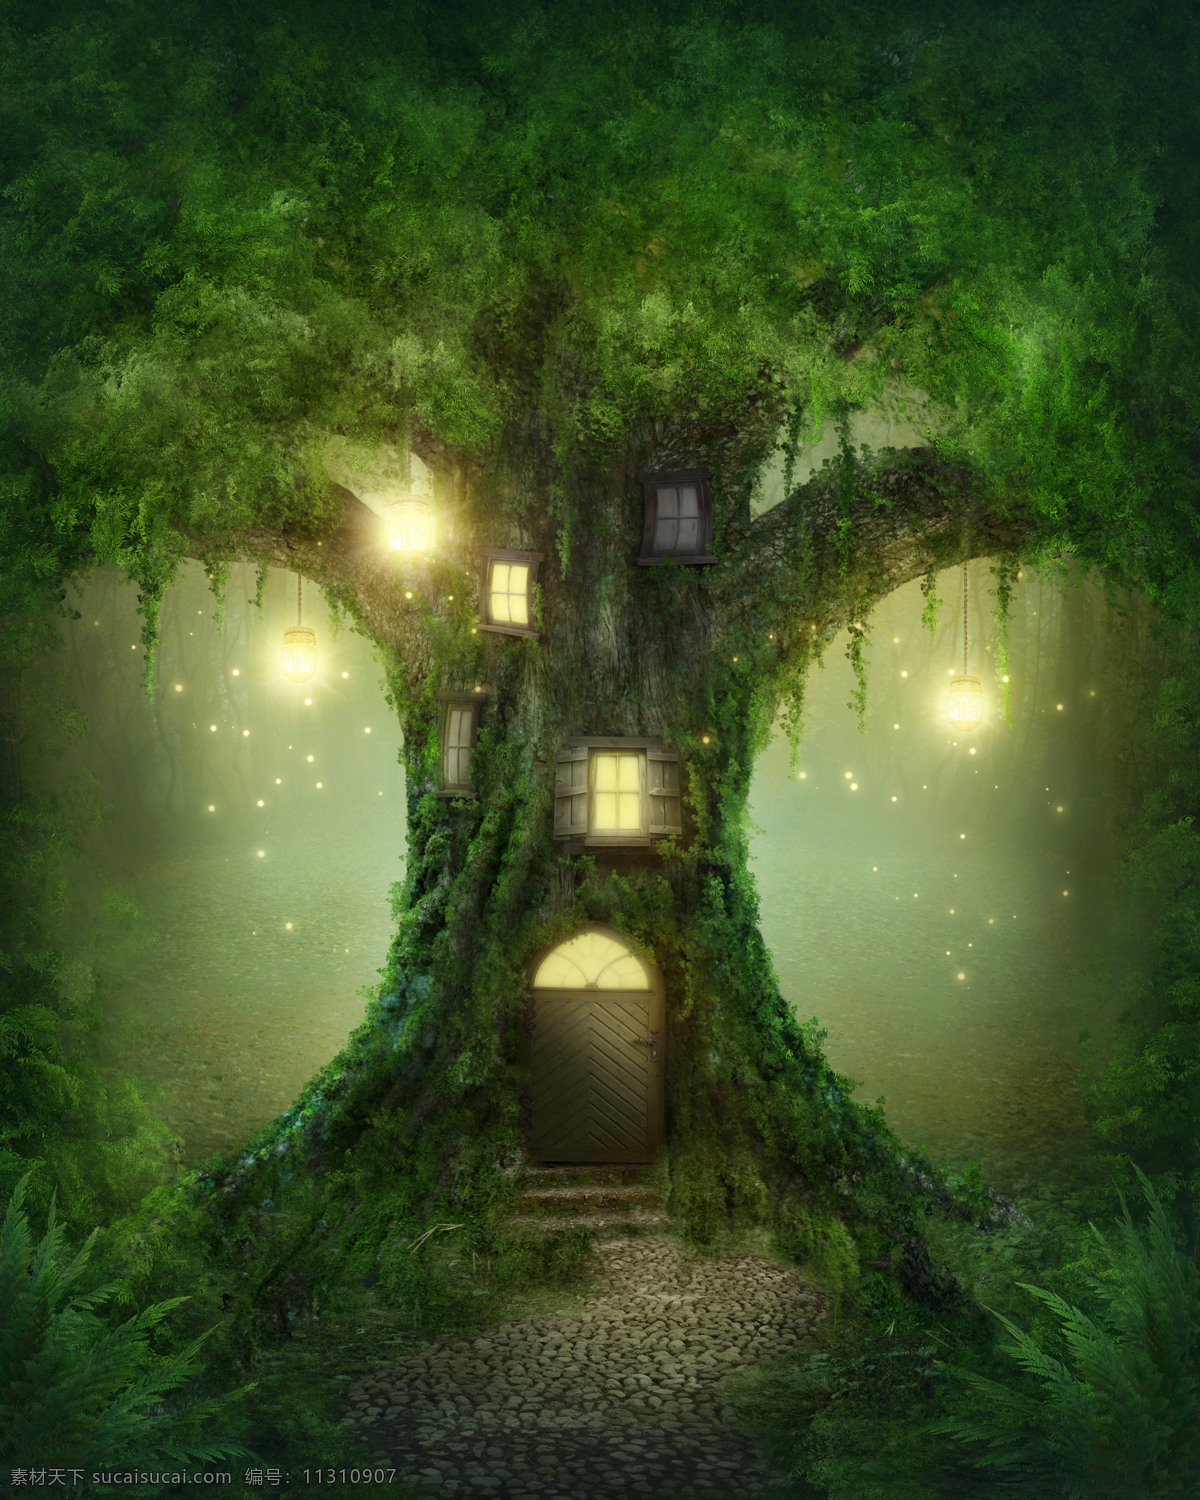 树上的房屋 树木 窗户 古老森林 神秘树林 路上的灯 星光 光点 其他类别 环境家居 黑色